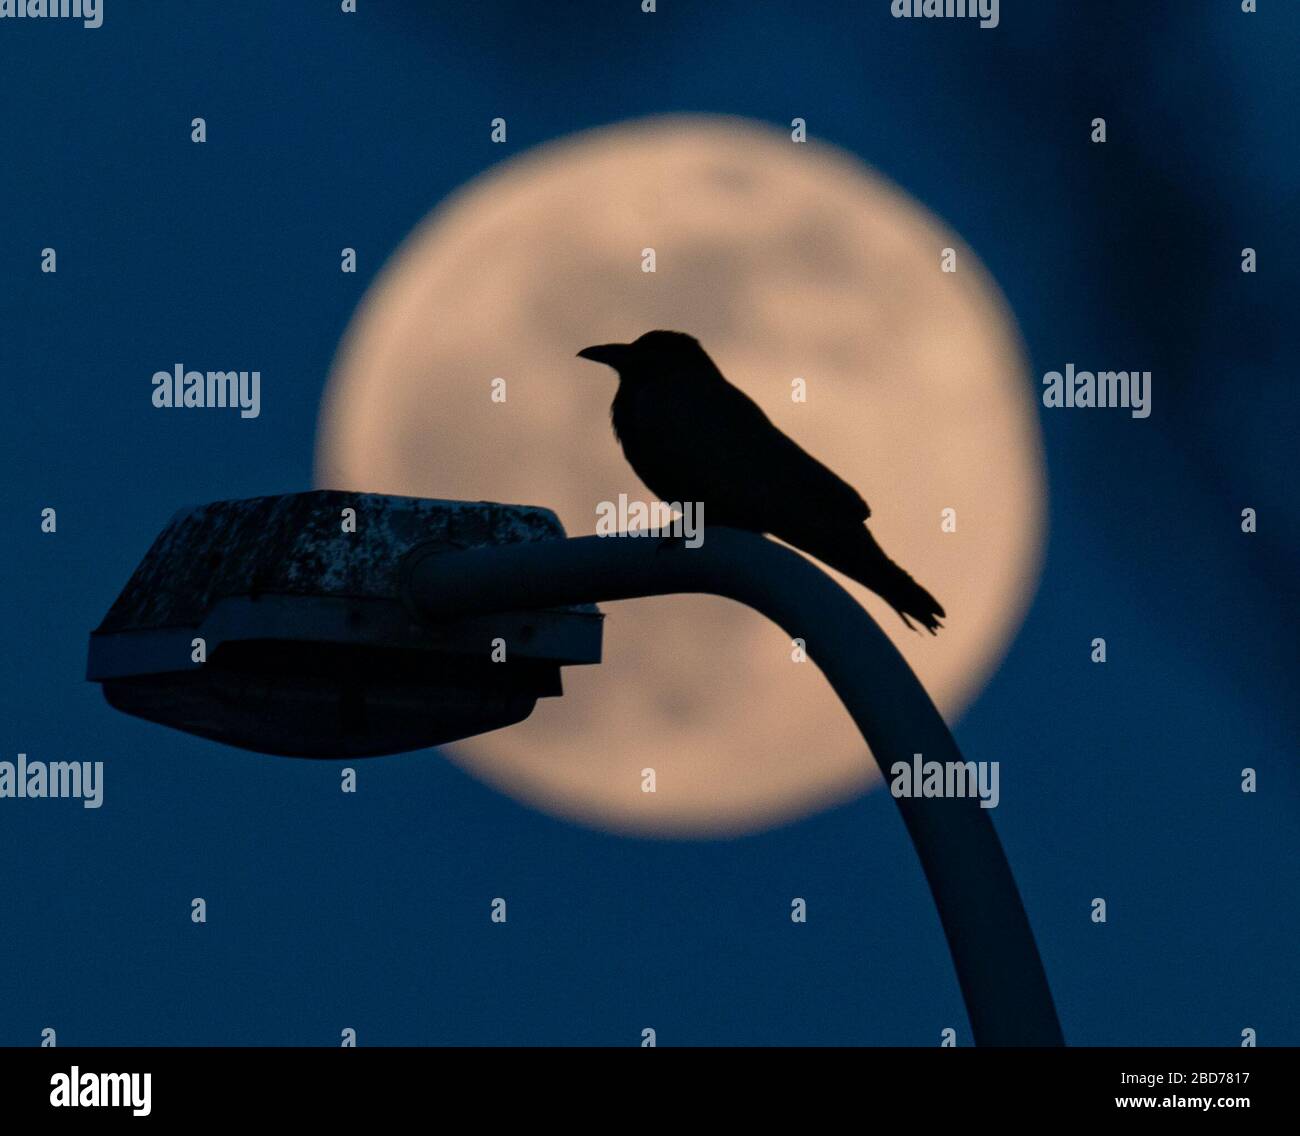 07 de abril de 2020, Hessen, Frankfurt/Main: Un cuervo se sienta en una linterna mientras la luna se eleva en el horizonte como la llamada superluna. La luna alcanza su perigeo, es decir, el punto más cercano a la órbita de la Tierra, en la noche del 7-8 de abril como luna llena y por lo tanto parece particularmente grande para el observador humano. Foto: Frank Rumpenhorst/dpa Foto de stock